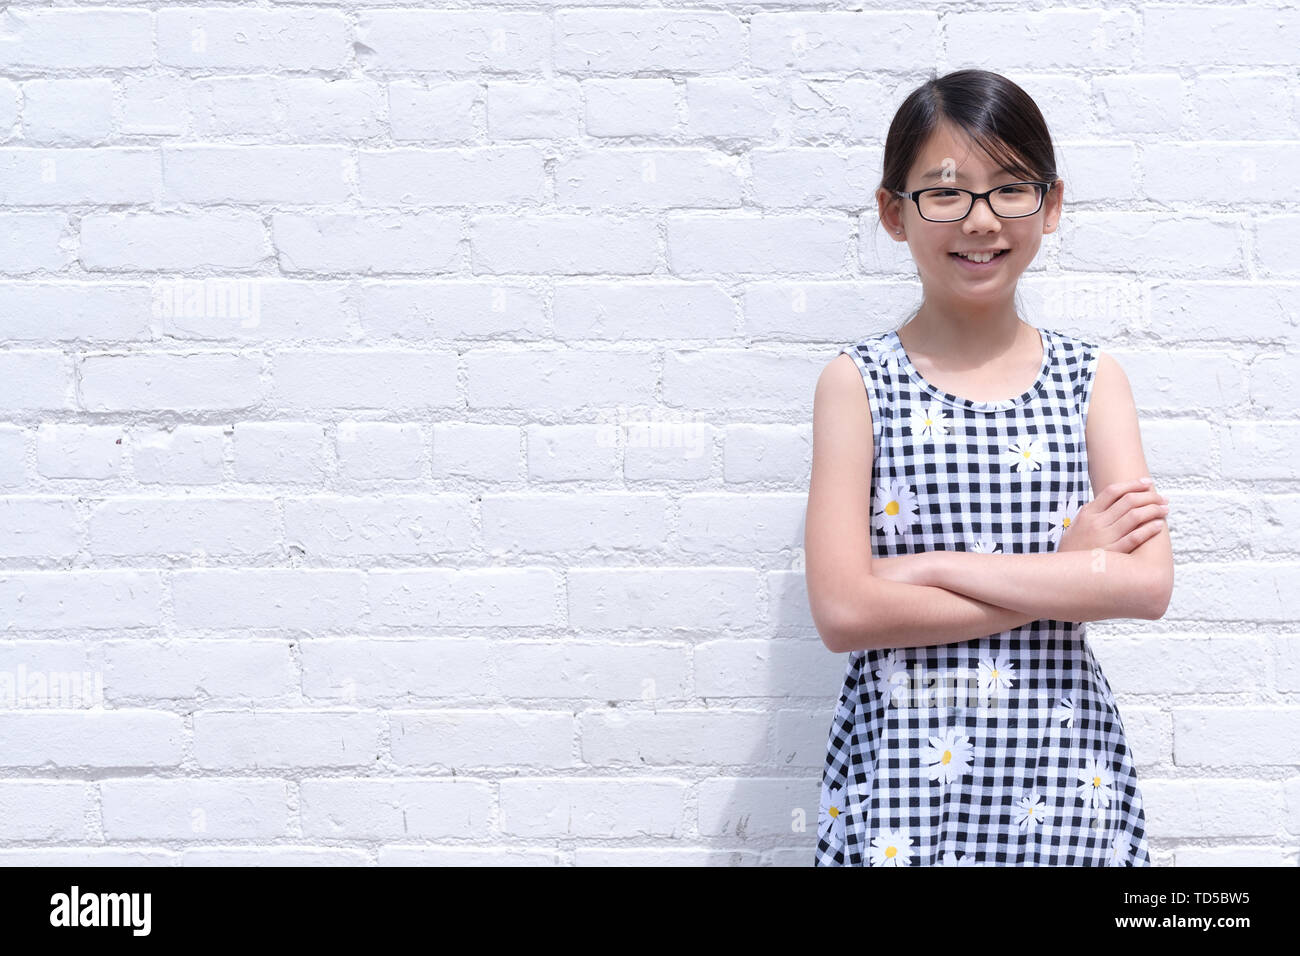 Portrait de jeune fille asiatique contre le mur en brique blanche Banque D'Images